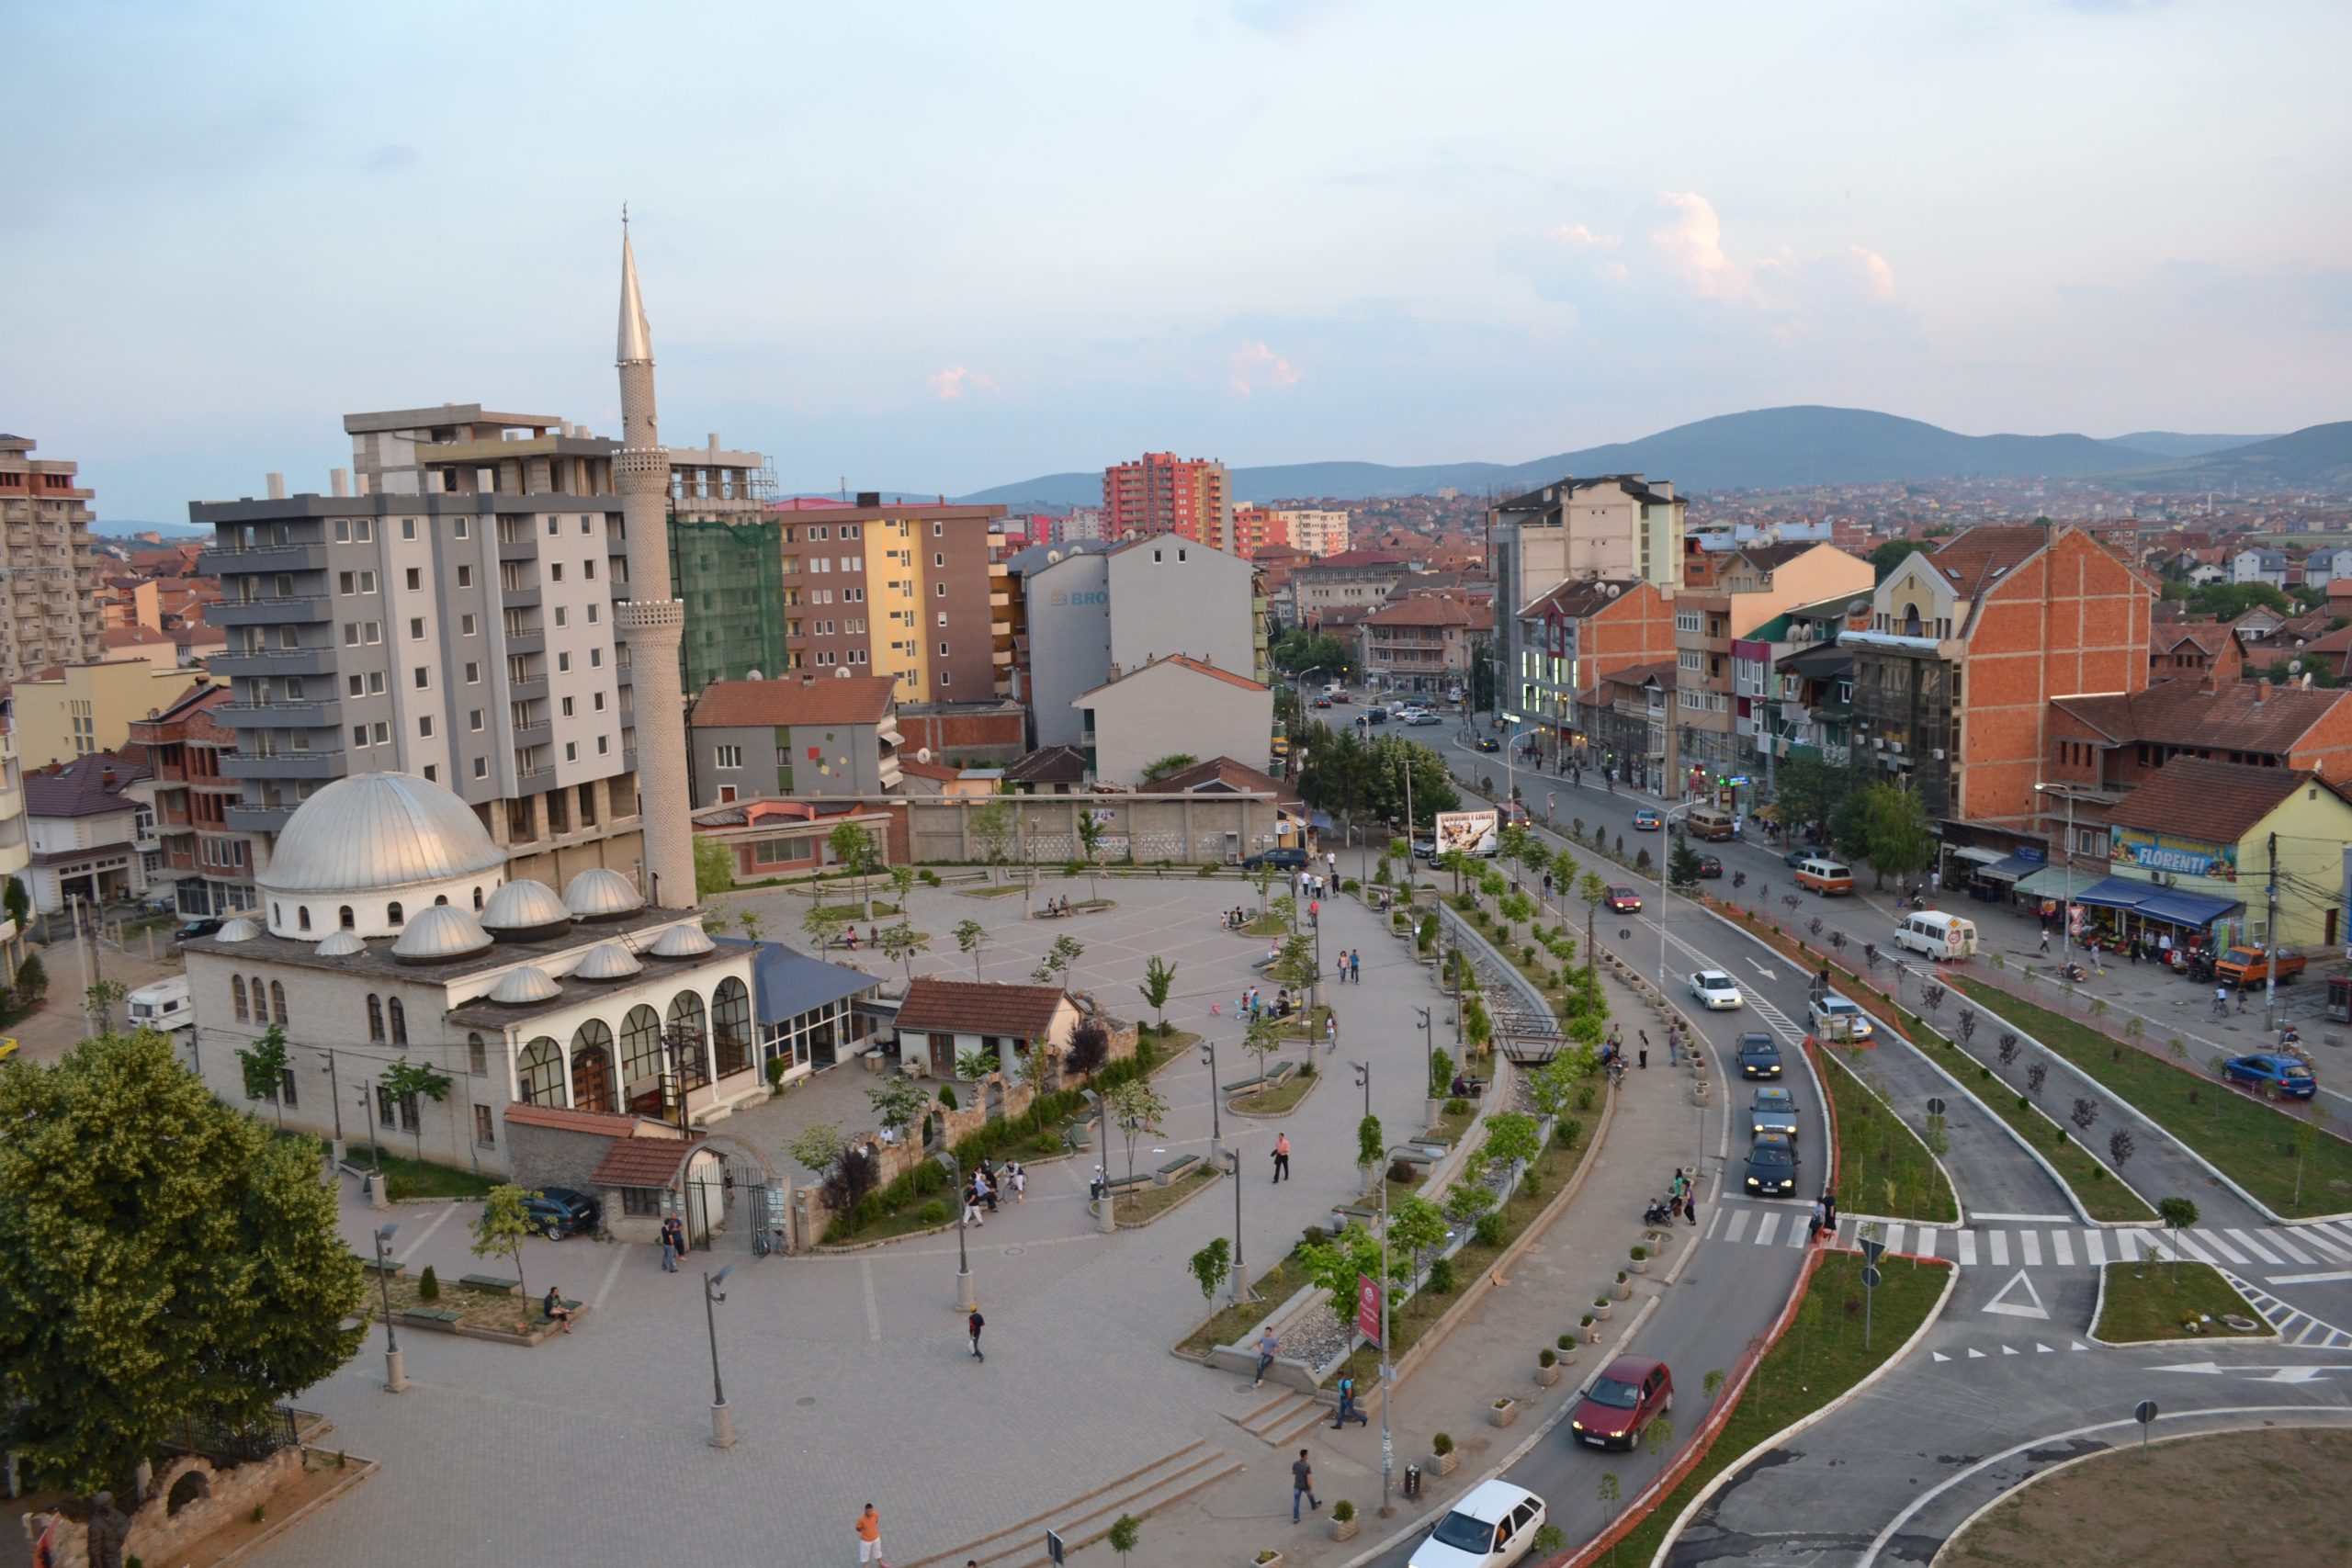 Qyteti në Kosovë që ka më së shumti familje që jetojnë me ndihmë sociale